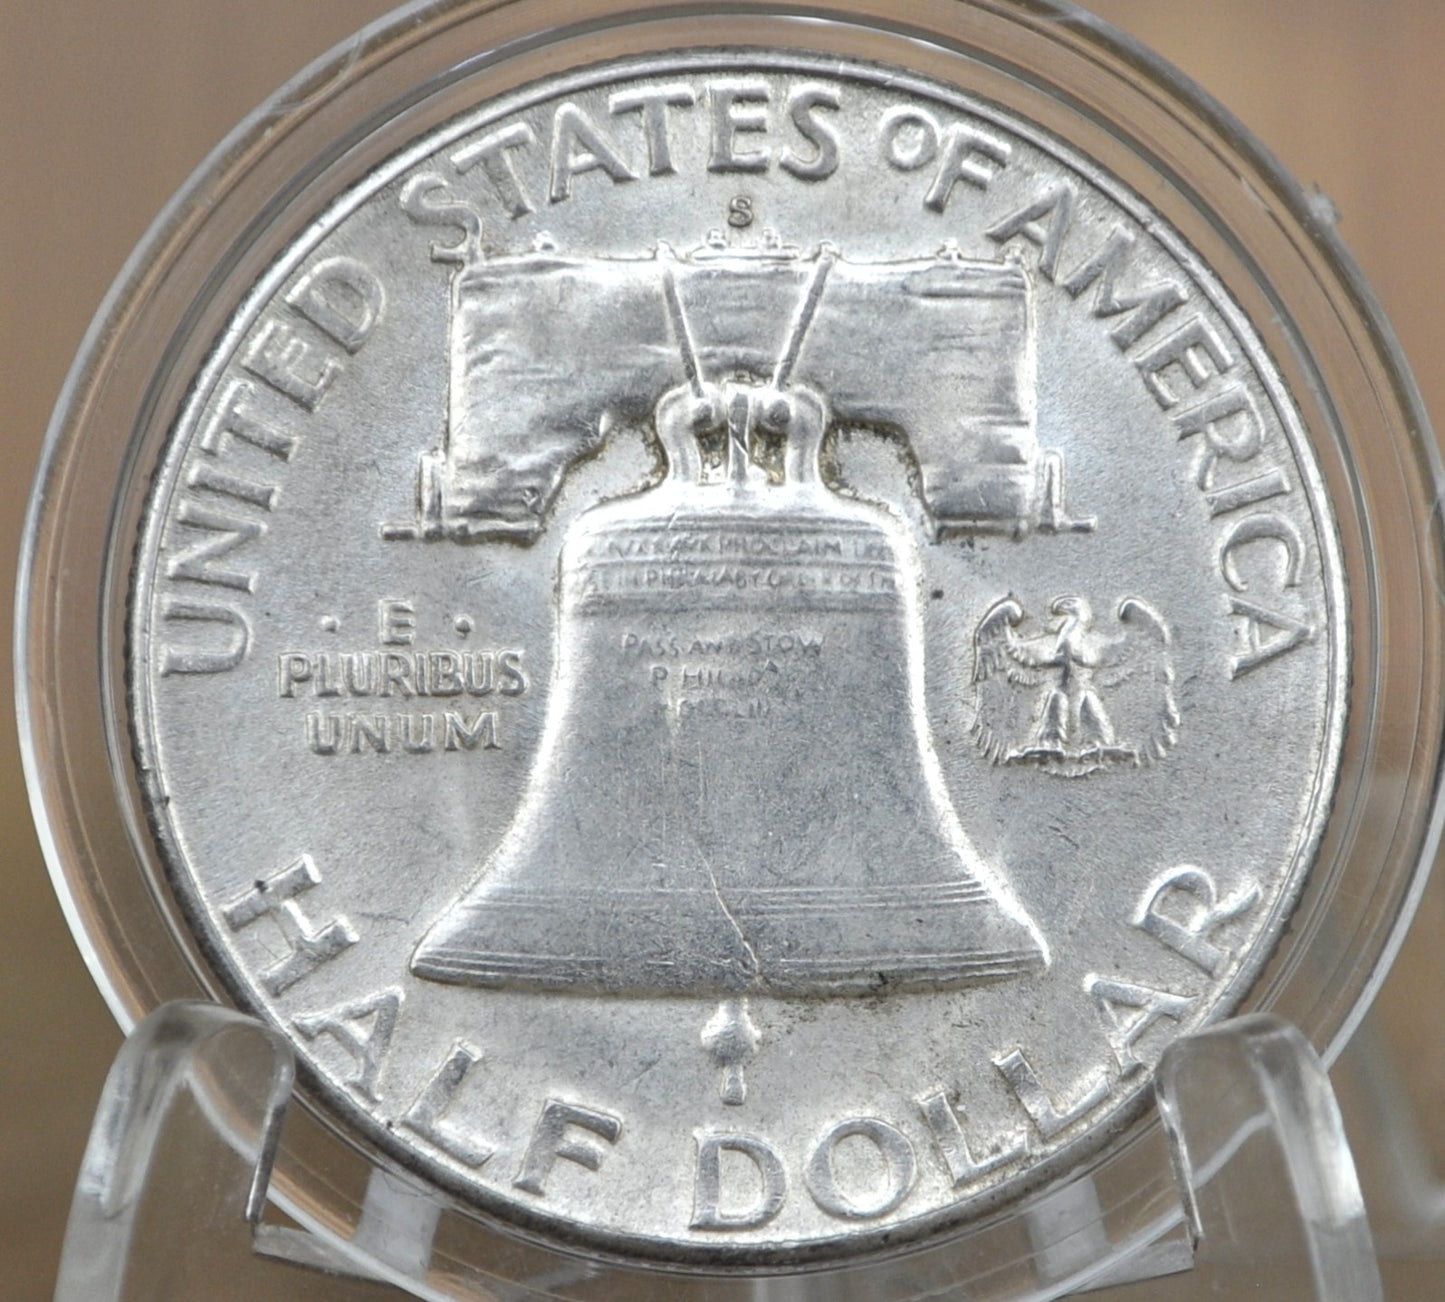 1952-S Franklin Silver Half Dollar - AU58 (About Uncirculated) - San Francisco Mint- Silver Half Dollar 1952 S Franklin - 1952 S Half